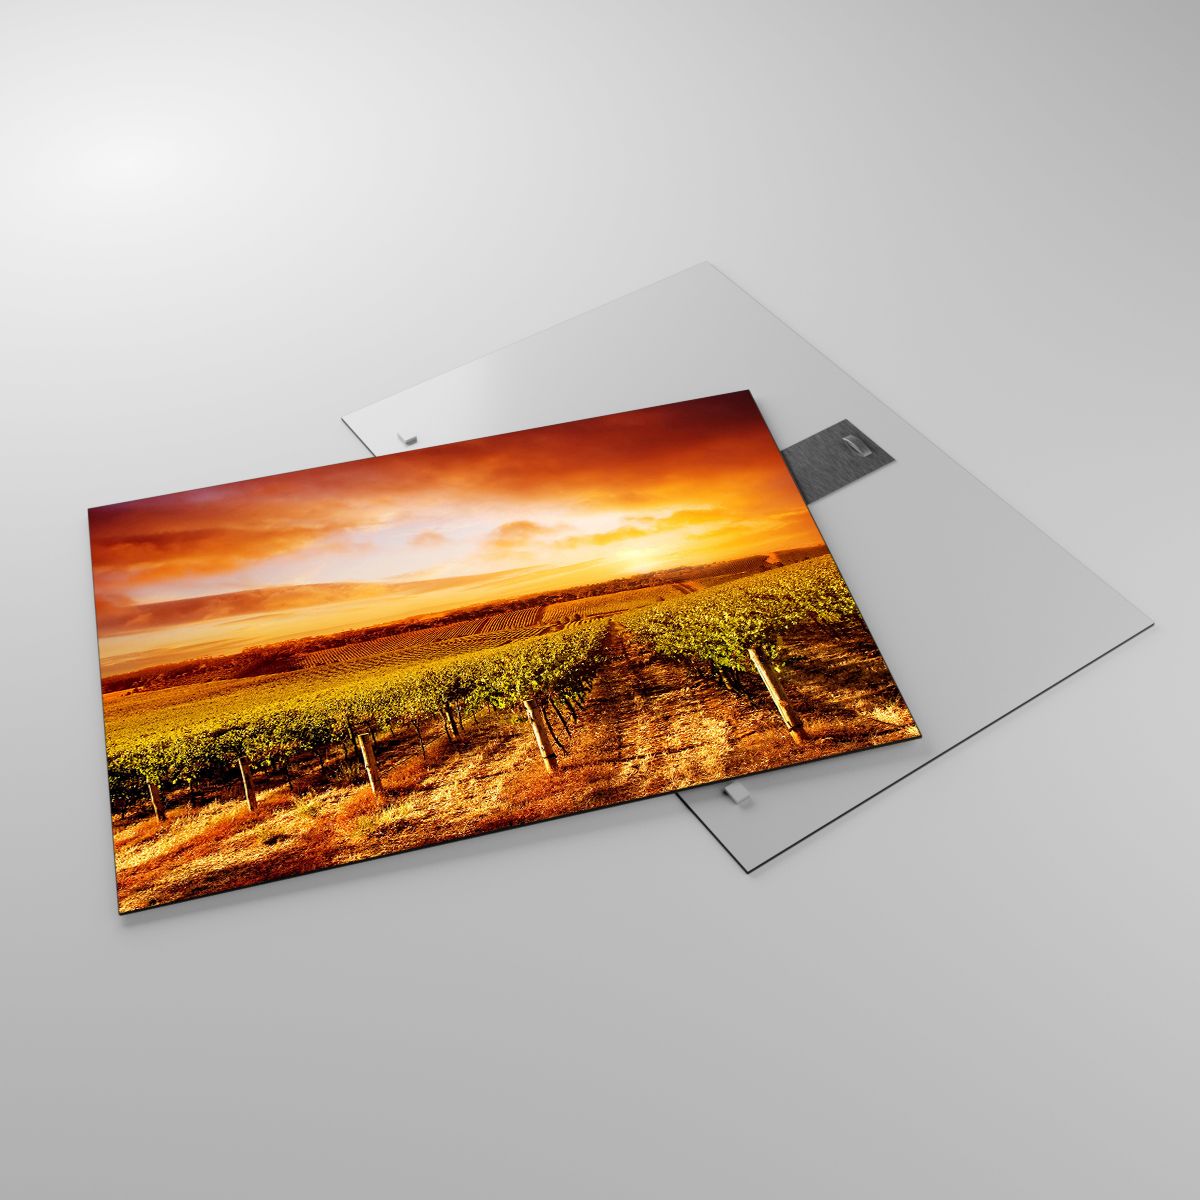 Glasbild Weinberg, Glasbild Der Sonnenuntergang, Glasbild Landschaft, Glasbild Landschaft, Glasbild Natur